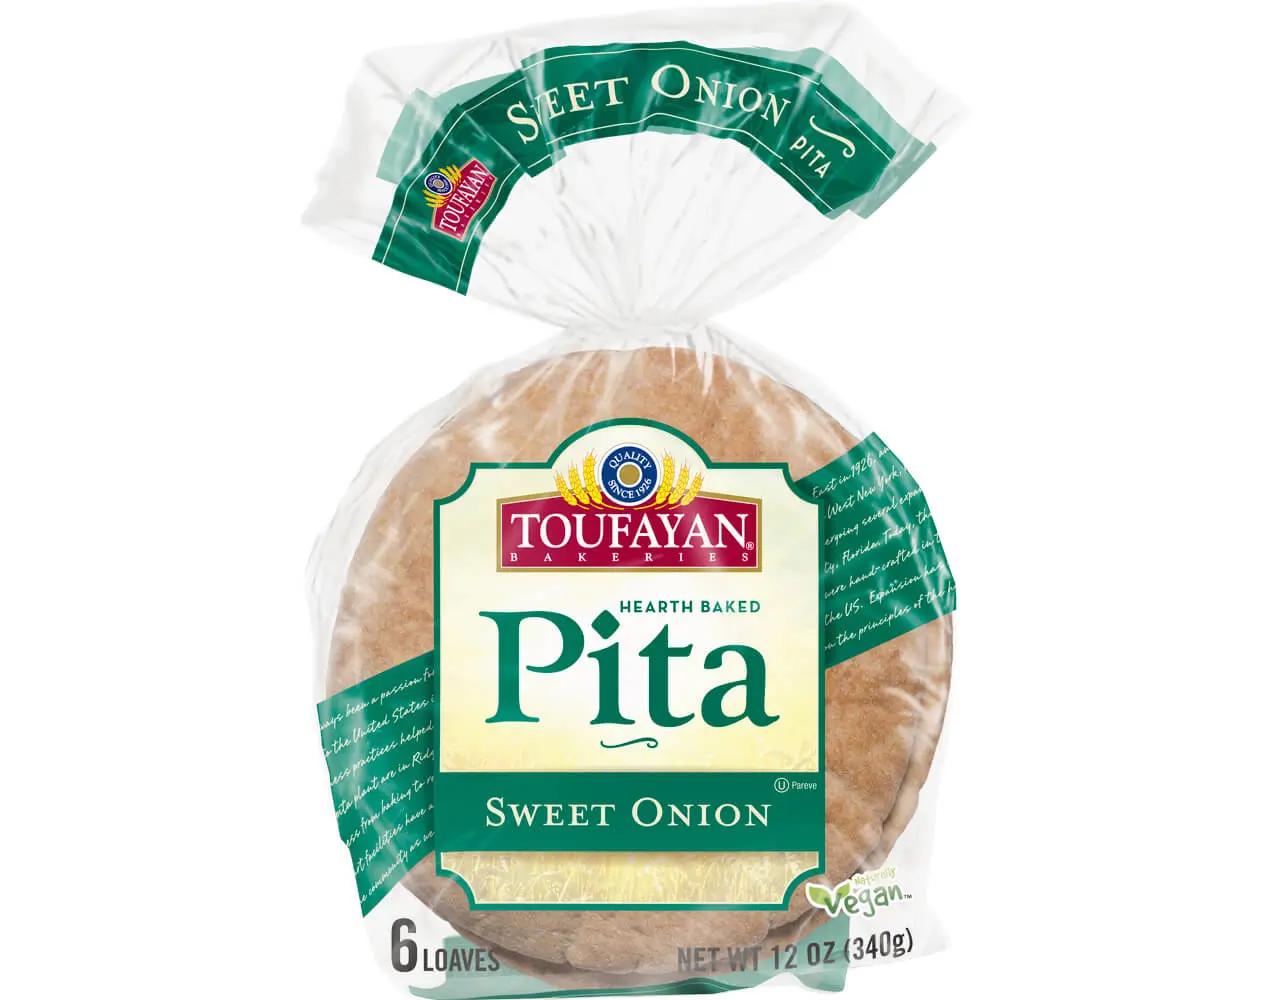 Sweet Onion Pita